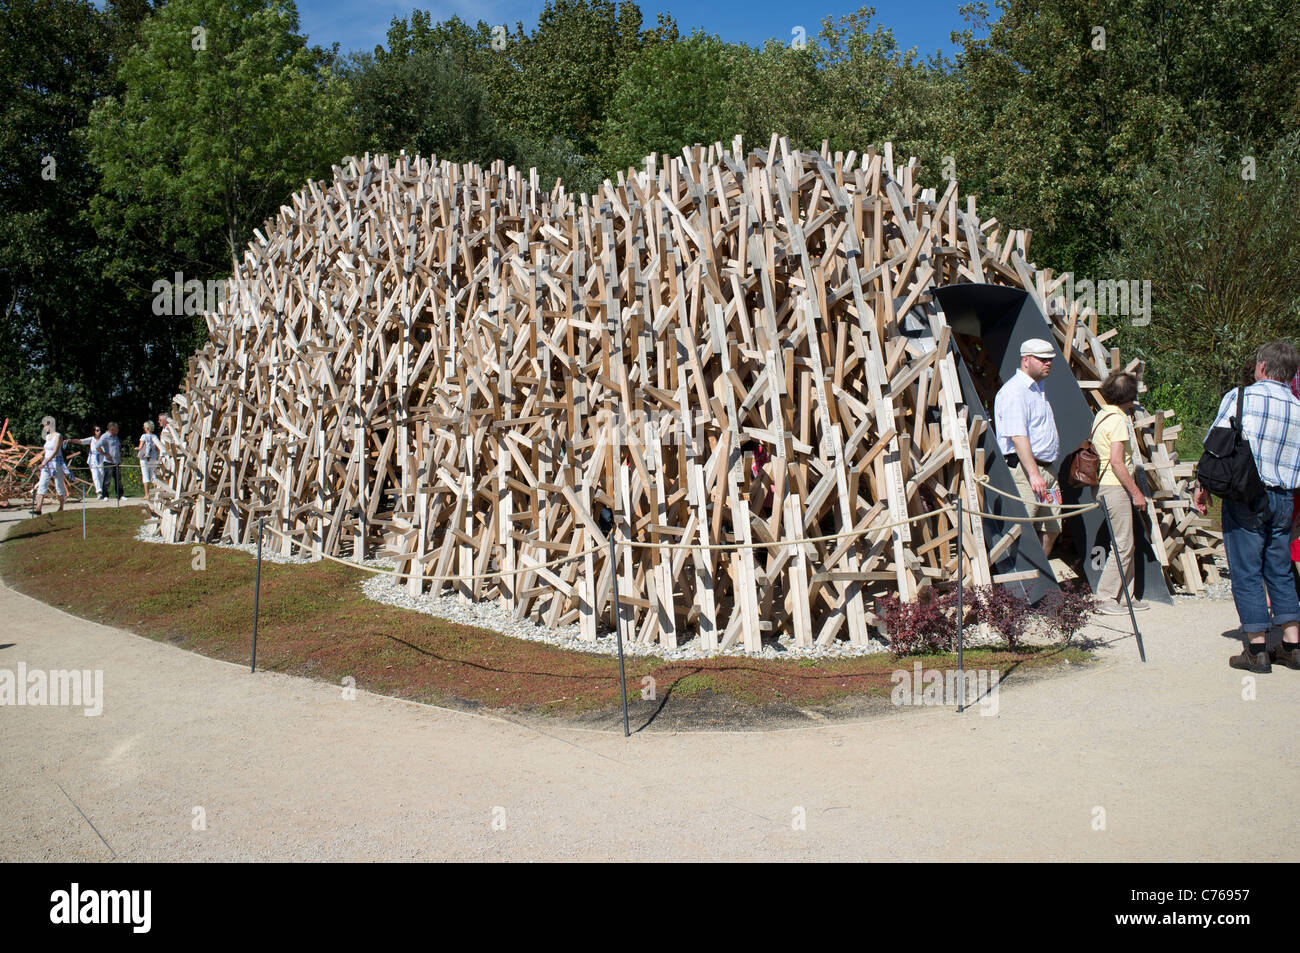 Exposición especial de estructura de madera en la diversidad de la vida, mostrar a nivel federal Horticultural Show o BUGA Koblenz Alemania Foto de stock